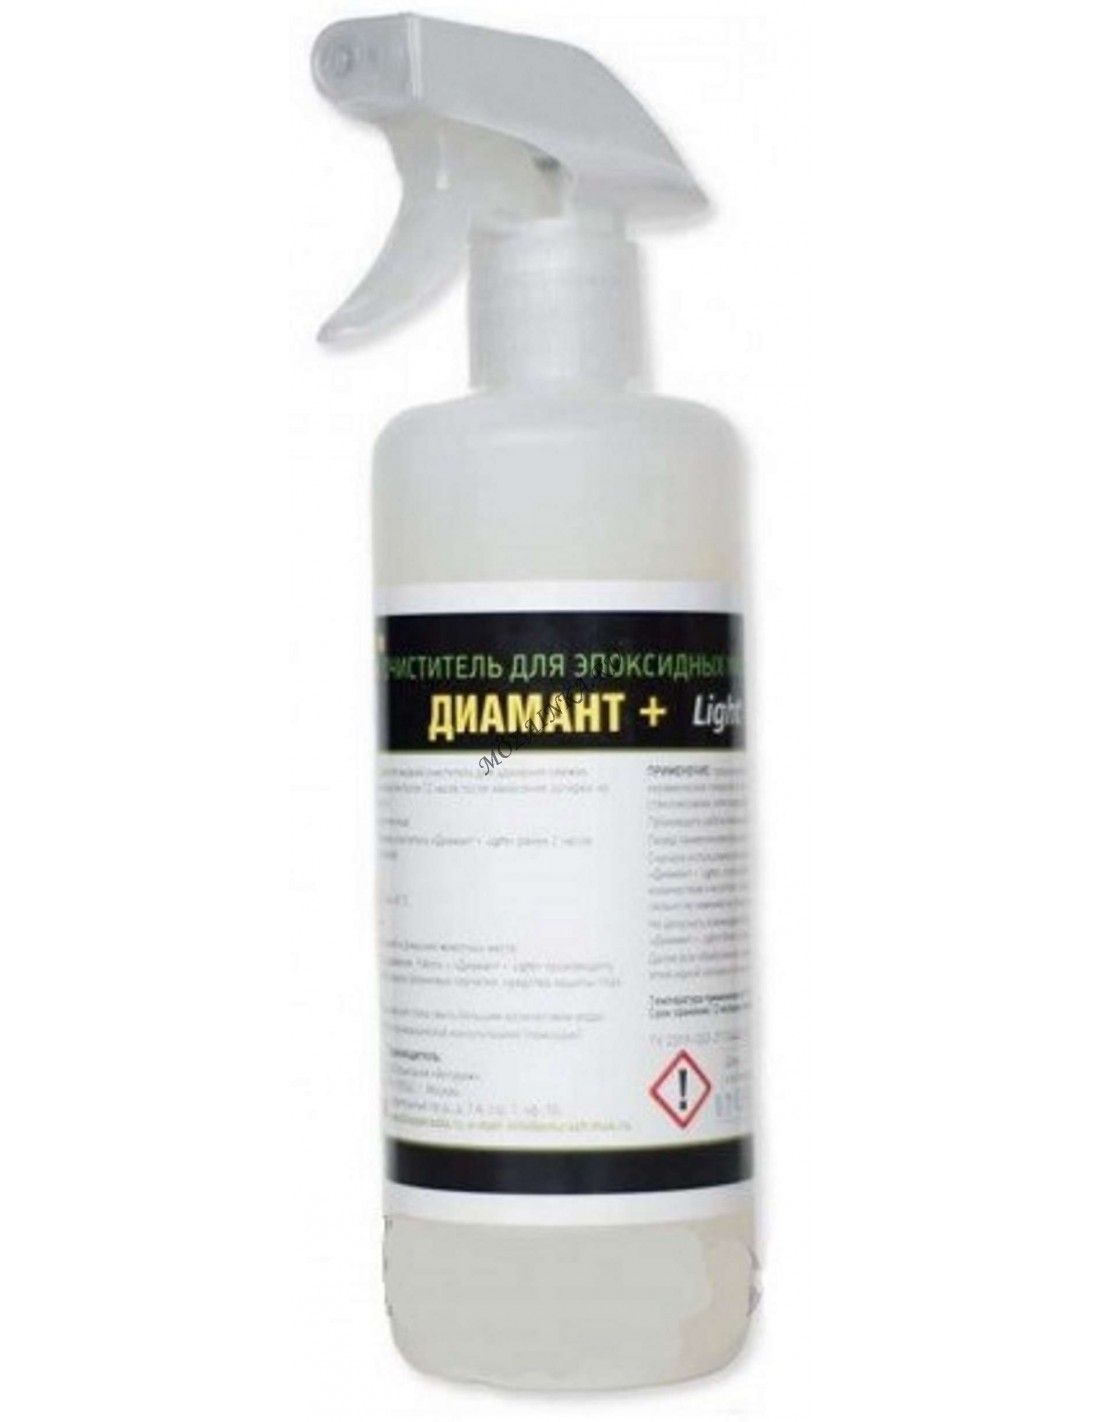 Диамант + Light смывка для эпоксидной затирки от фабрики Диамант  .